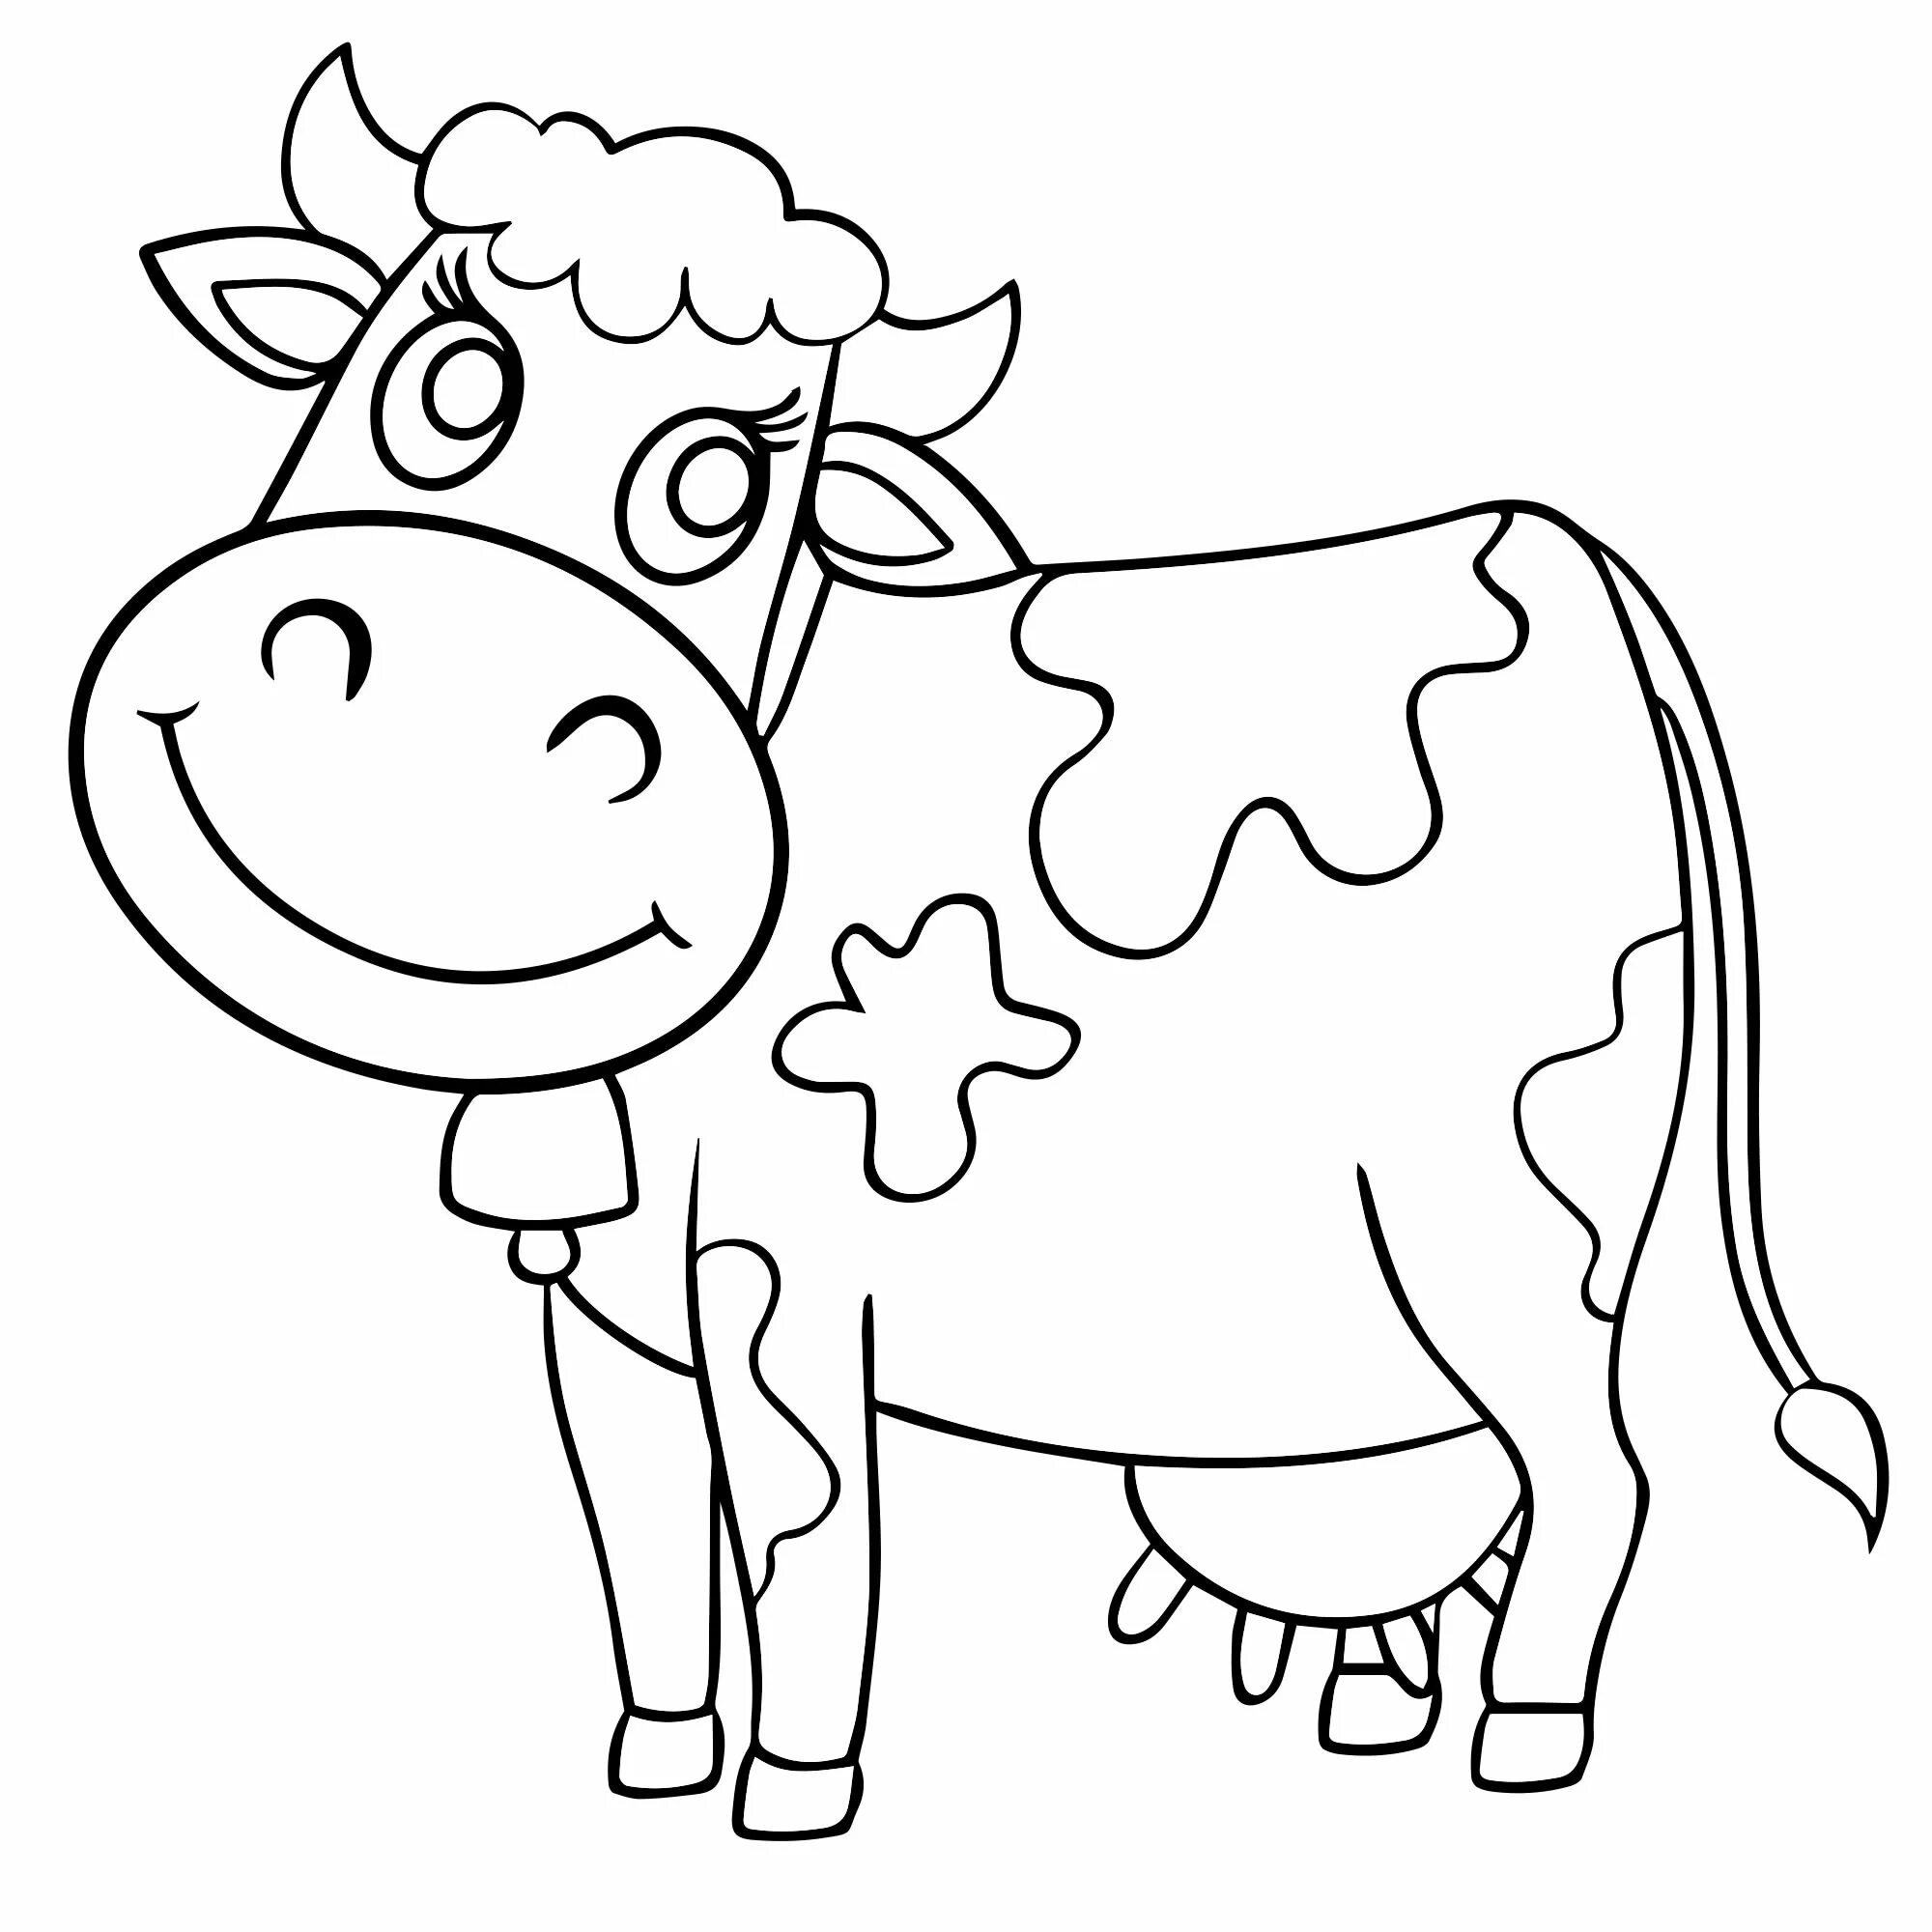 Раскраски для детей 3 года коровы. Раскраска корова. Корова раскраска для детей. Корова расскраскадля детей. Корова раскраска для малышей.